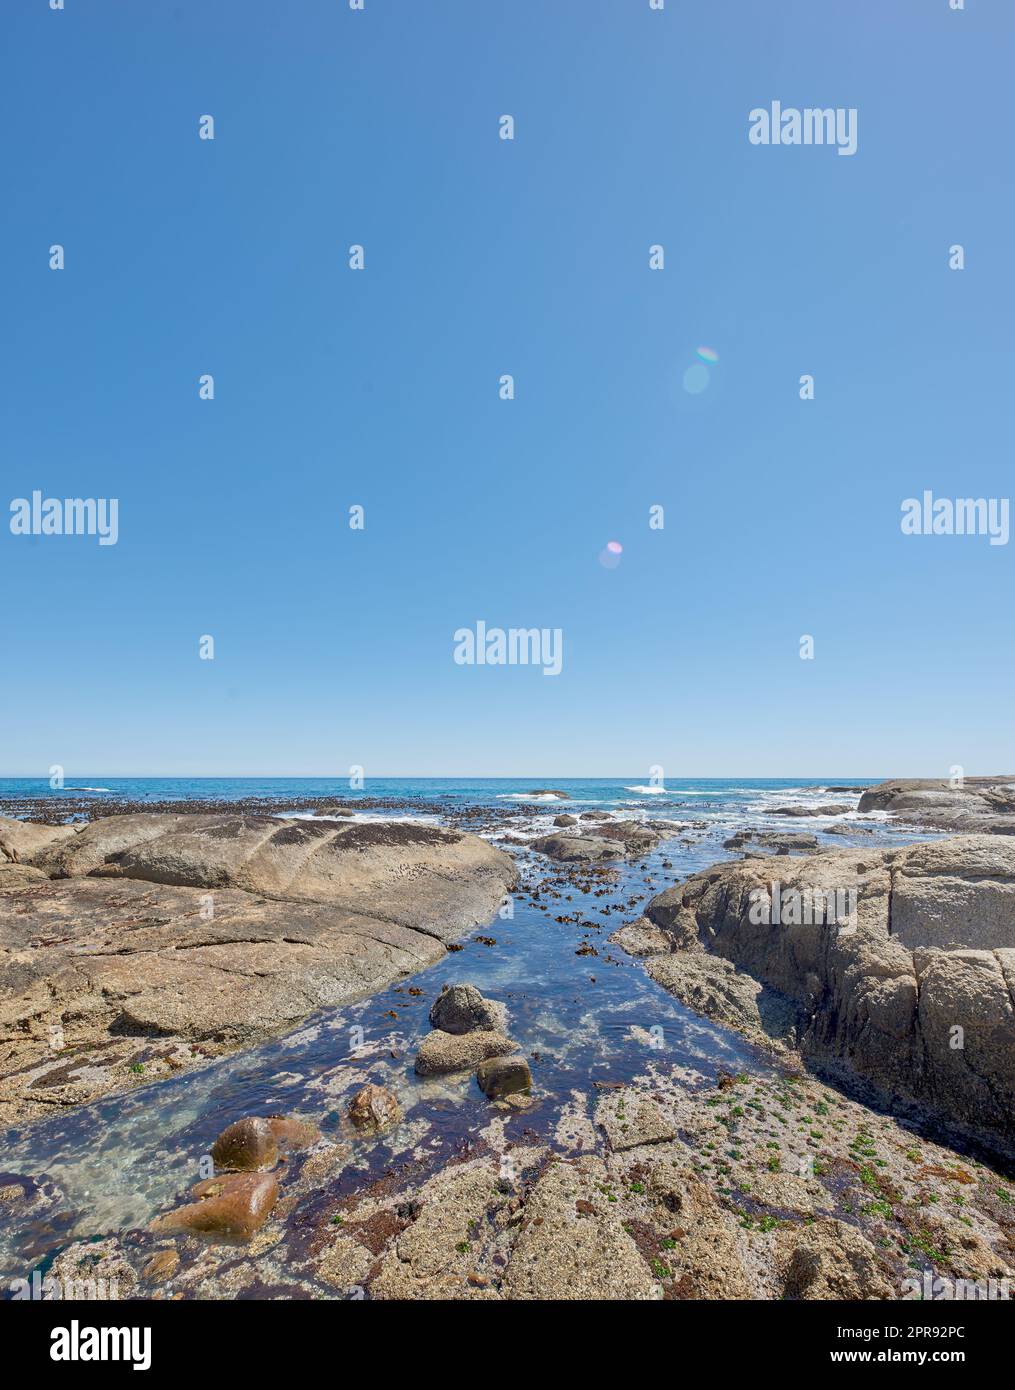 Copiez l'espace en mer avec un fond ciel bleu clair et une côte rocheuse à camps Bay, le Cap, Afrique du Sud. Rochers sur une plage au bord d'un océan majestueux. Paysage pittoresque pour des vacances d'été Banque D'Images